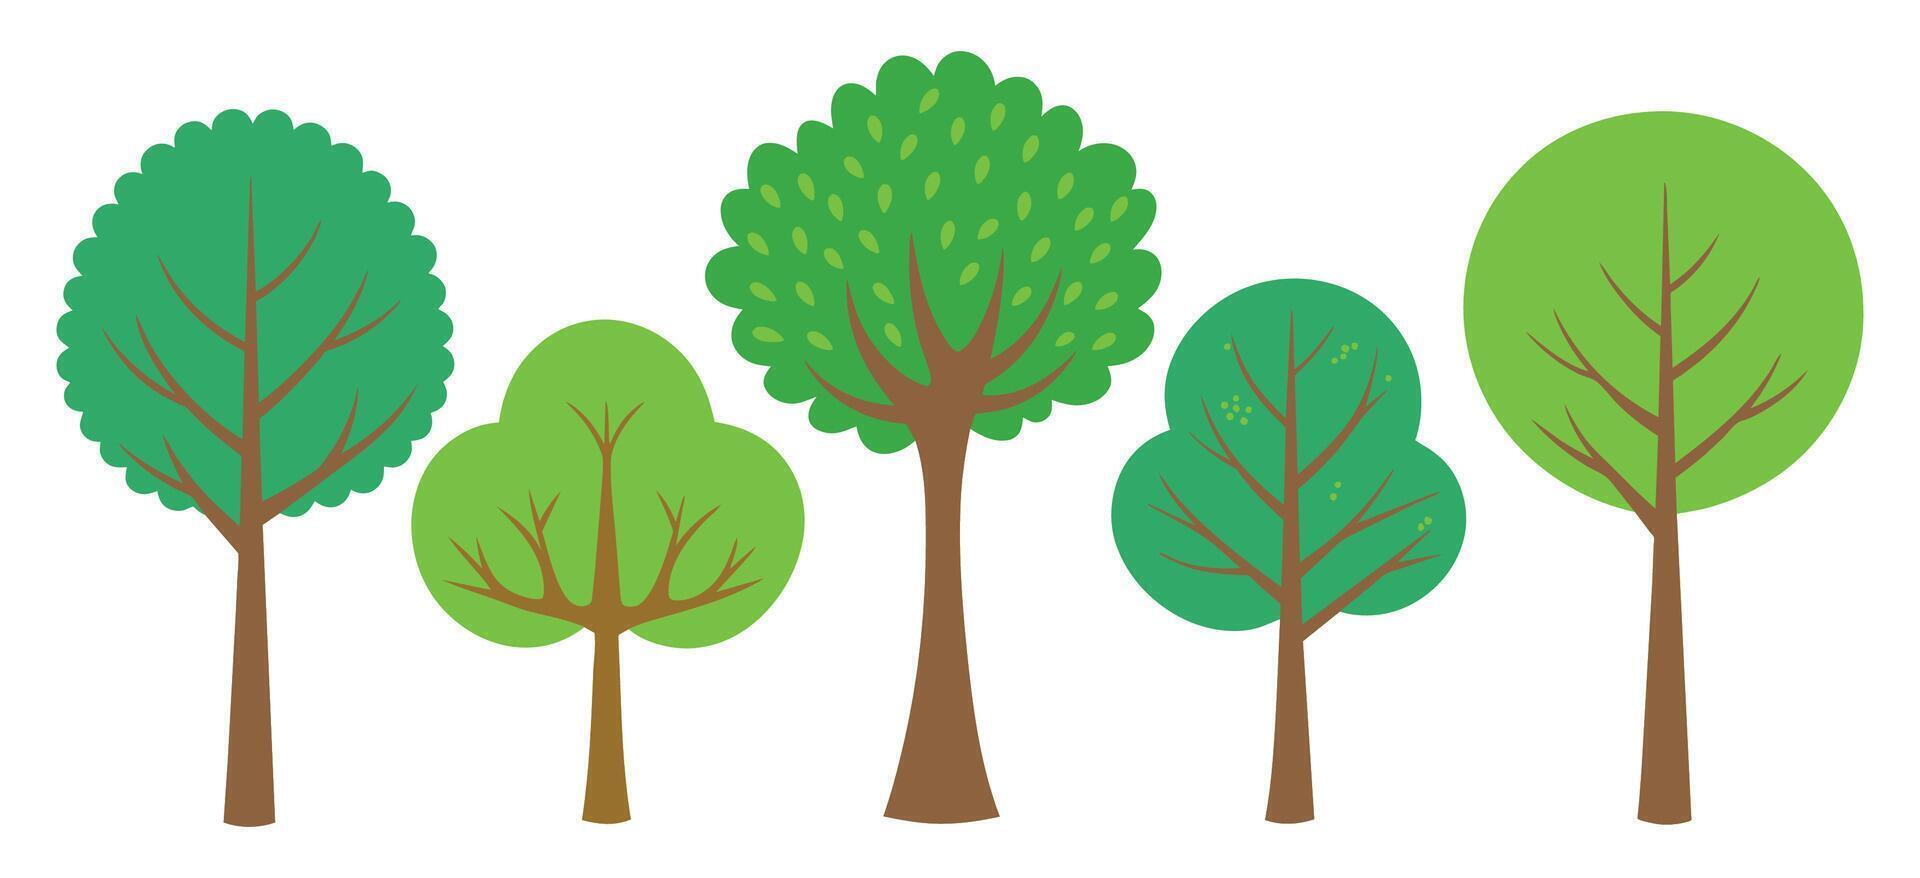 hand- getrokken bomen verzameling set, illustratie vector voor infographic of andere toepassingen